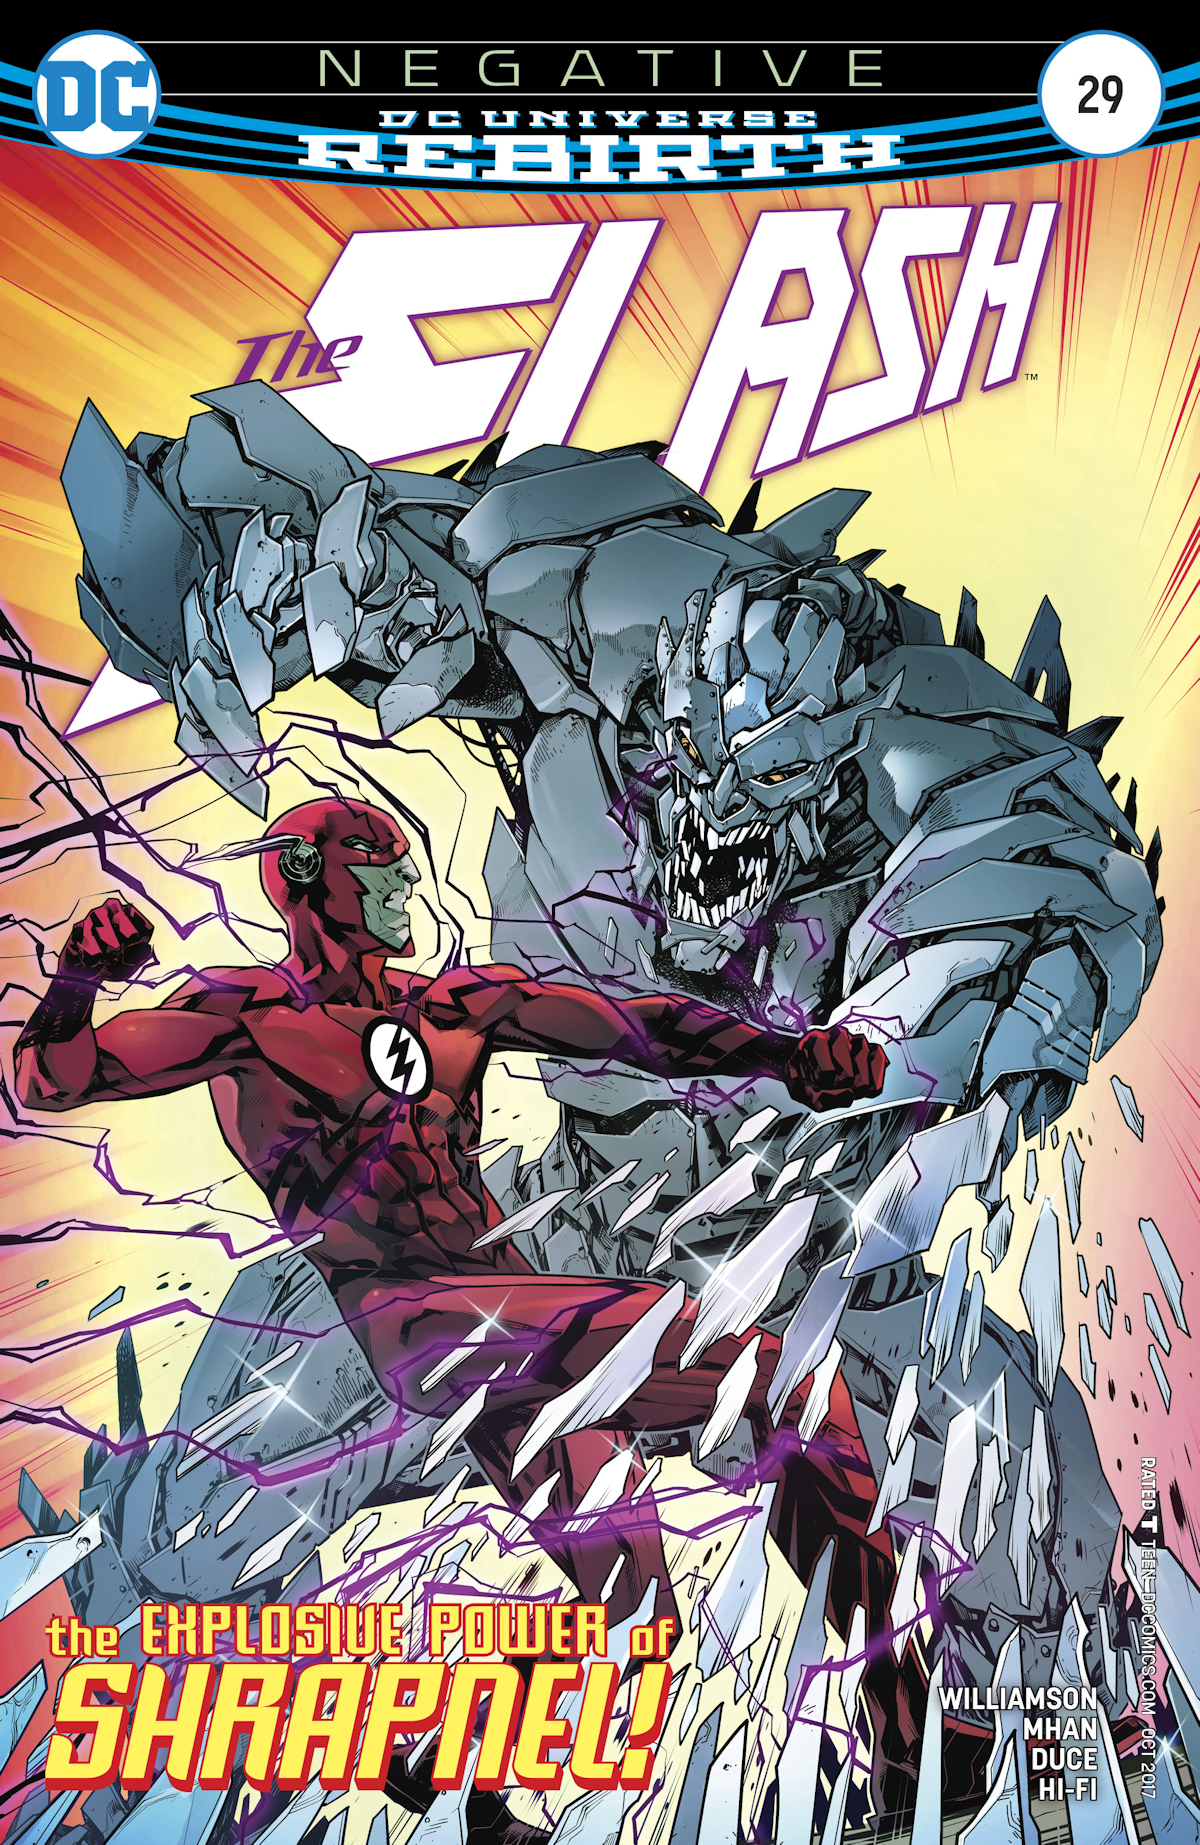 Flash Vol. 5 29 (Cover A)